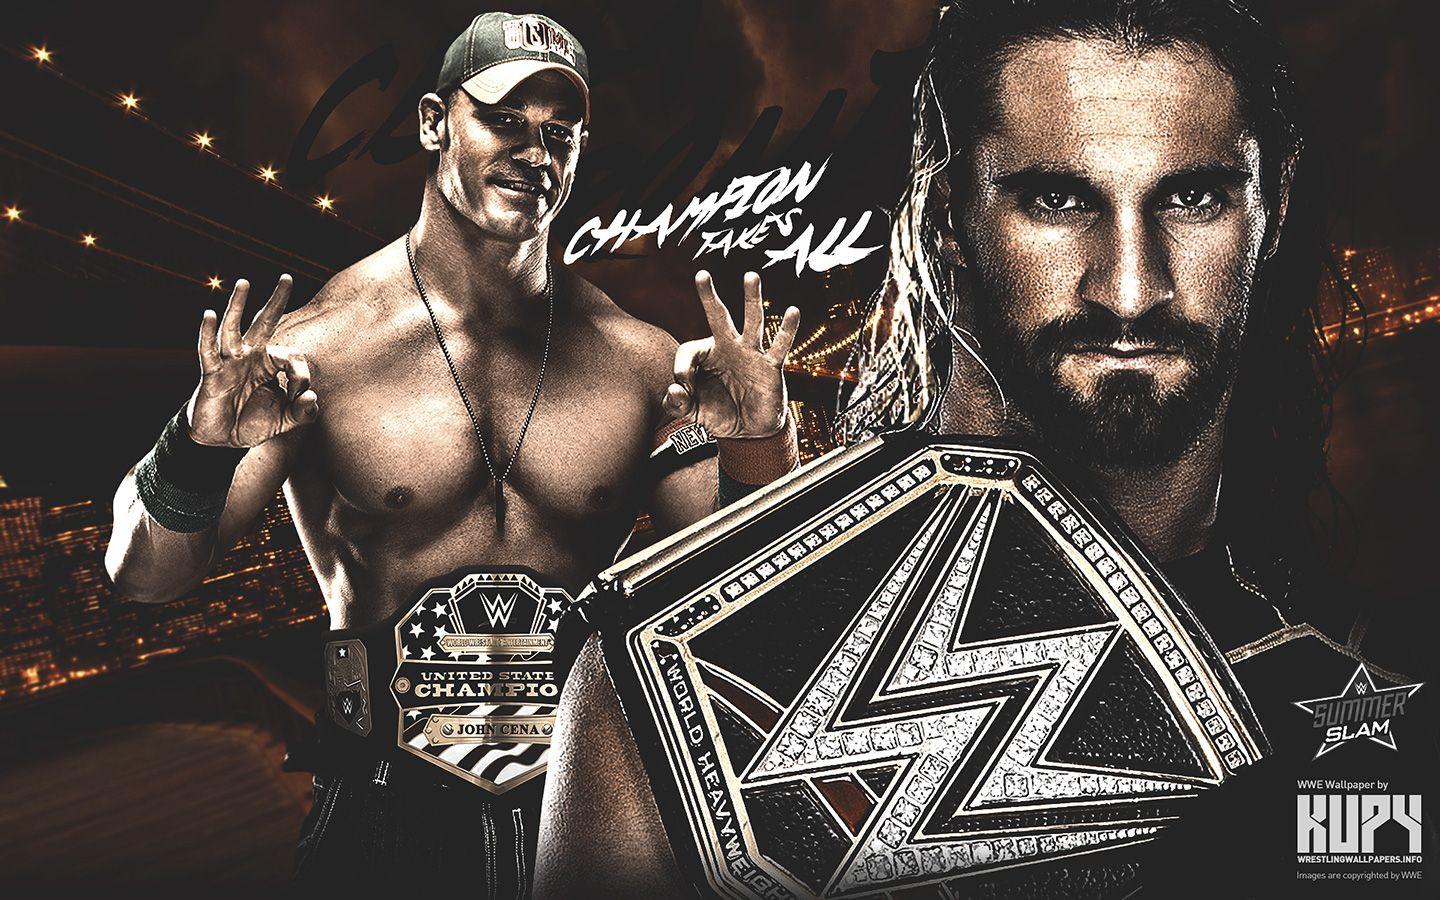 SummerSlam 2015 Cena vs Seth Rollins wallpaper